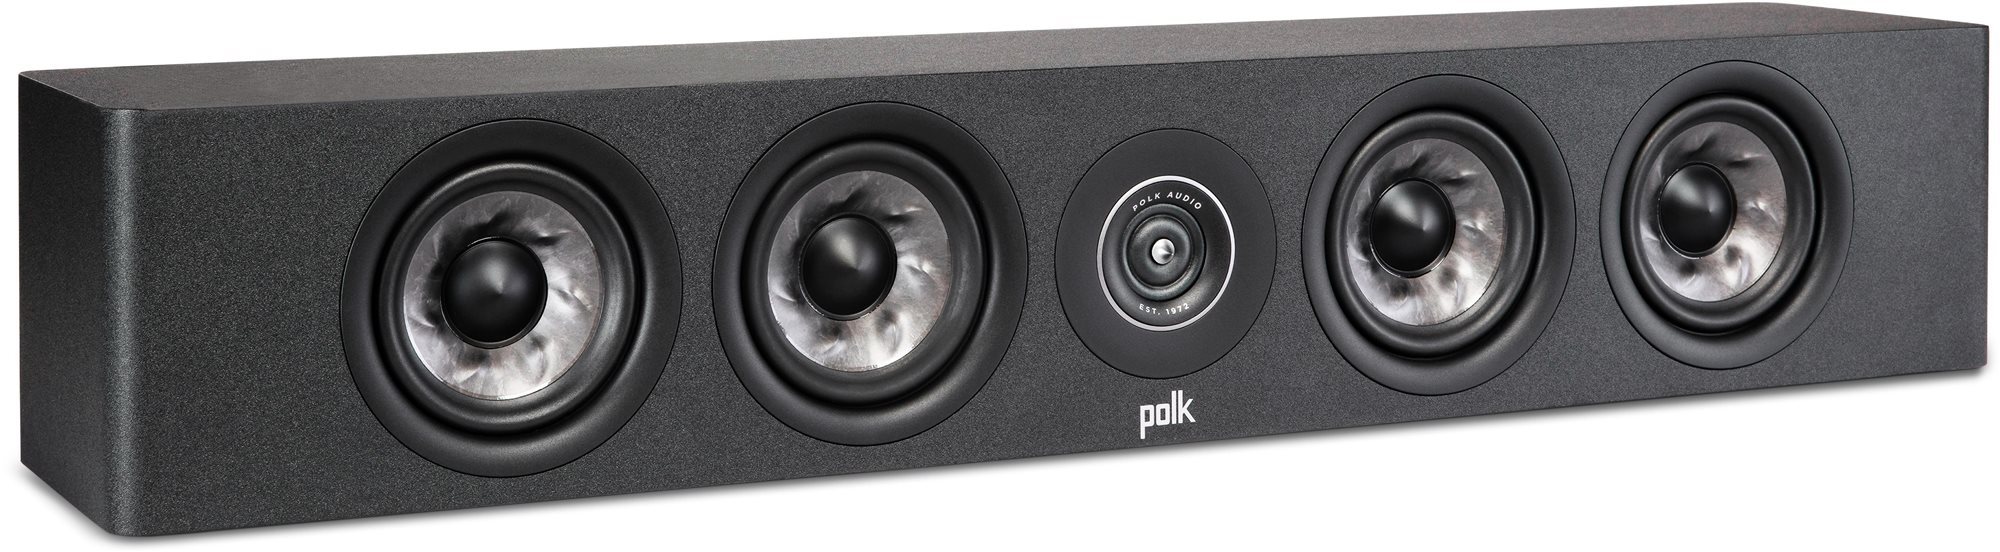 Polk audio polk reserve r350c slim fekete (darab)